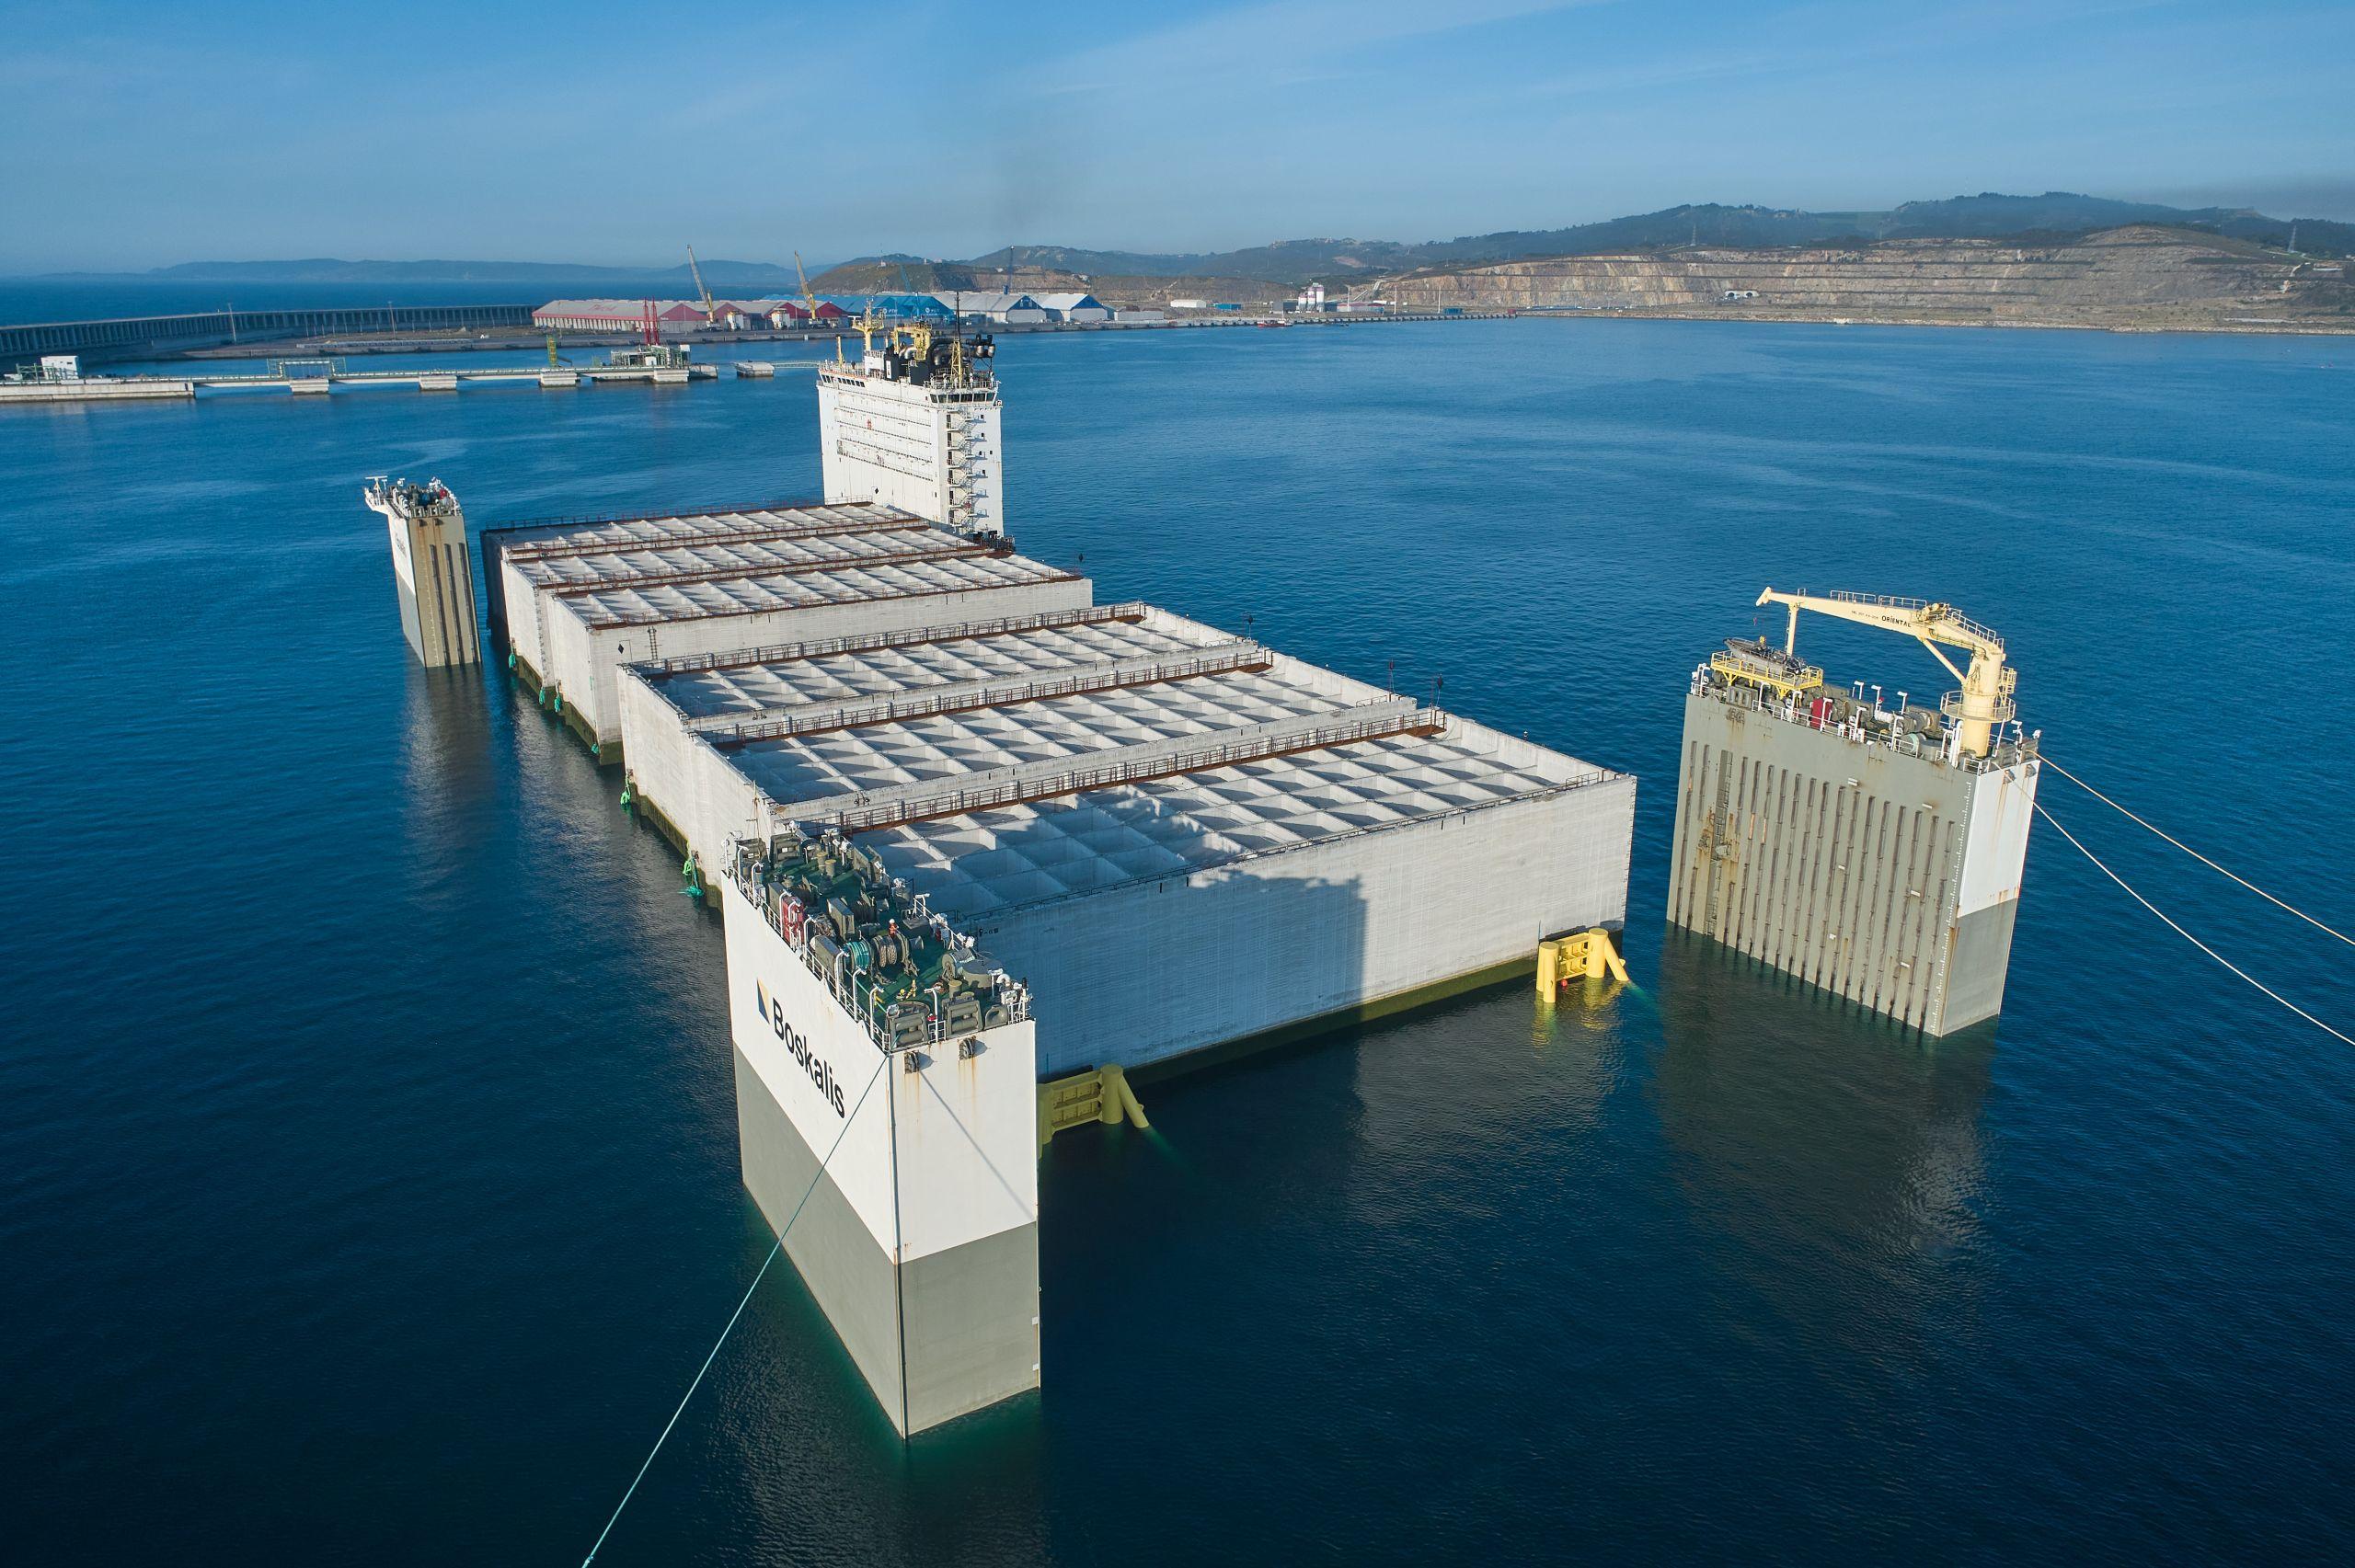 Imagen de la operación del ‘Boka Vanguard’ cedida por el Puerto de A Coruña.